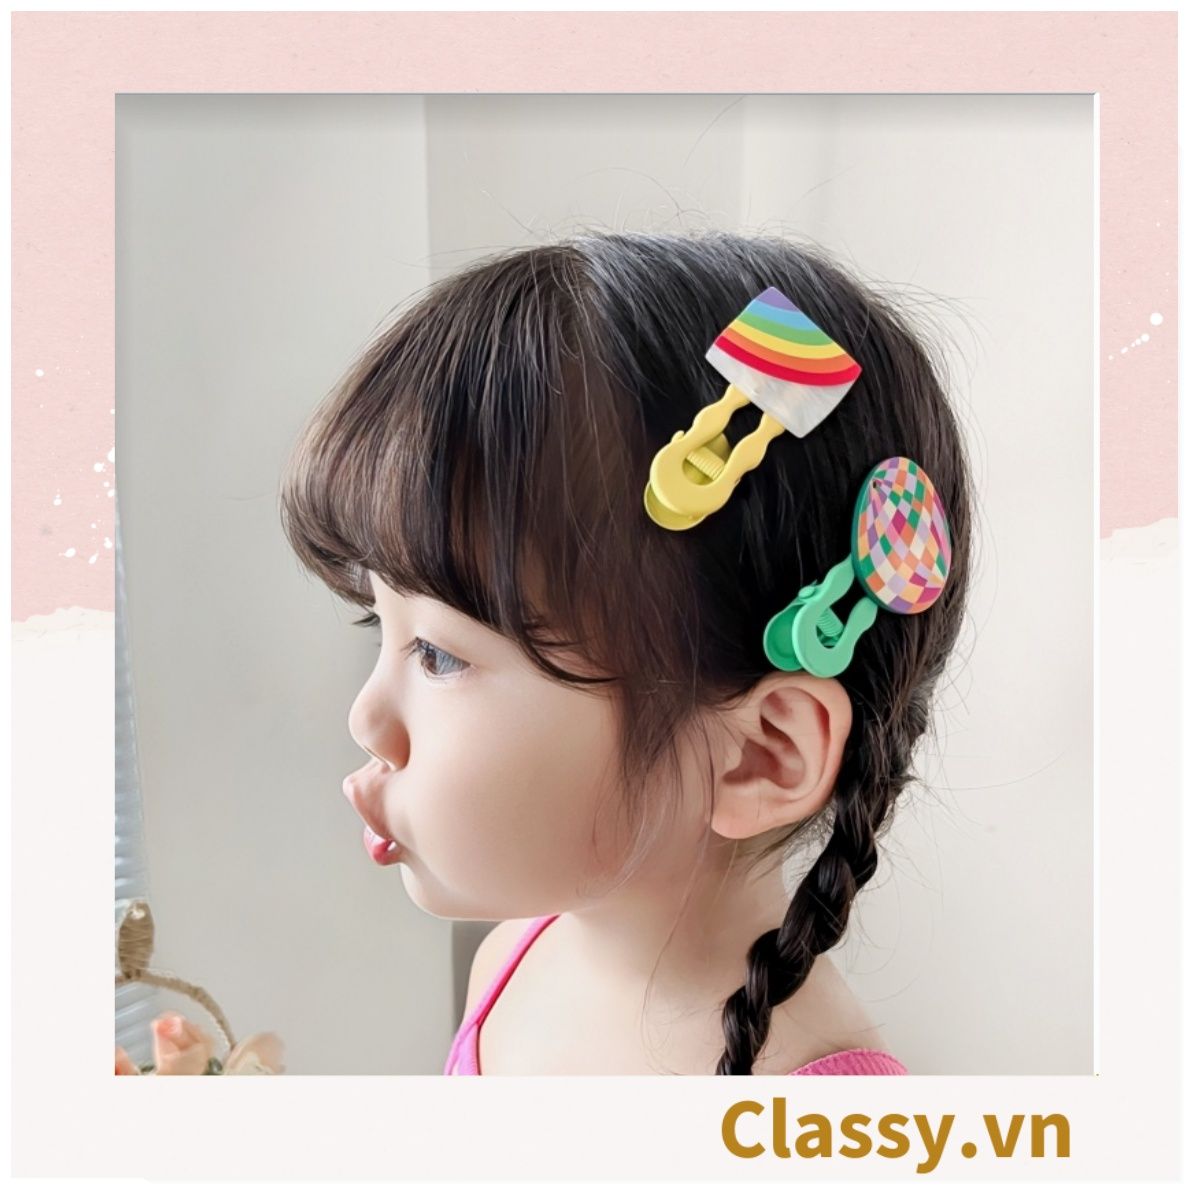  Bộ 2 kẹp tóc mái cho bé gái, nhiều màu nhiều họa tiết đáng yêu PK1237 